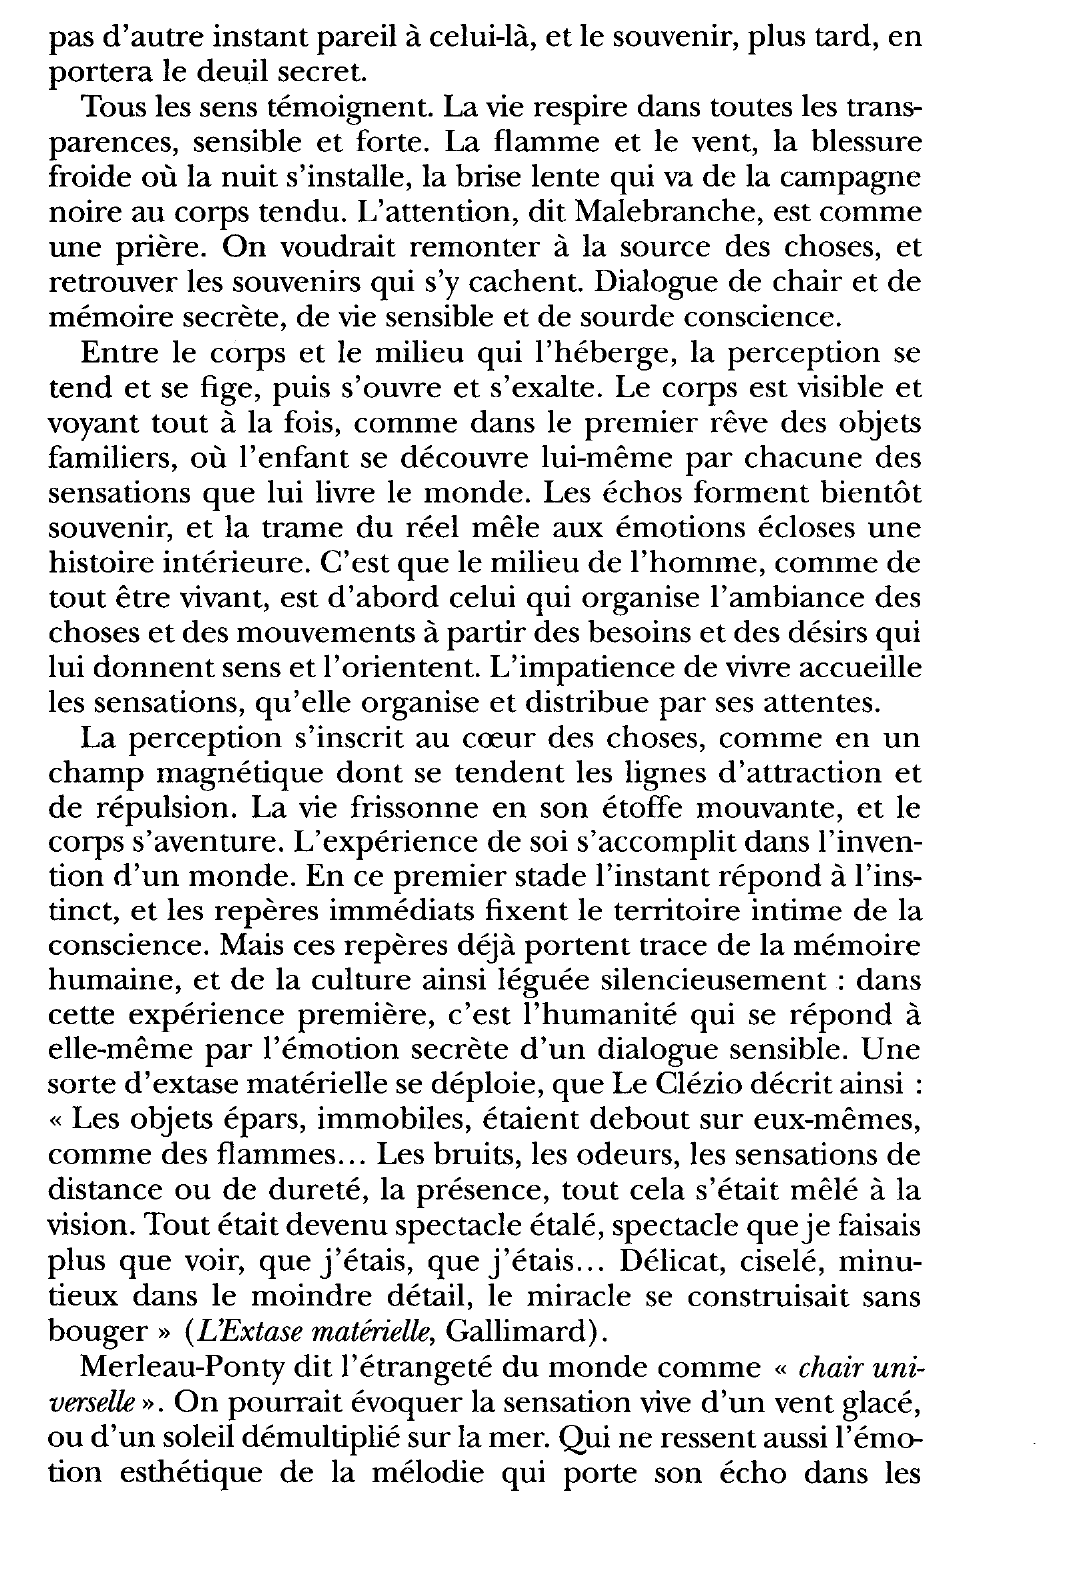 Prévisualisation du document L'étoffe du monde : Merleau-Ponty, L’oeil et l'Esprit, Gallimard.